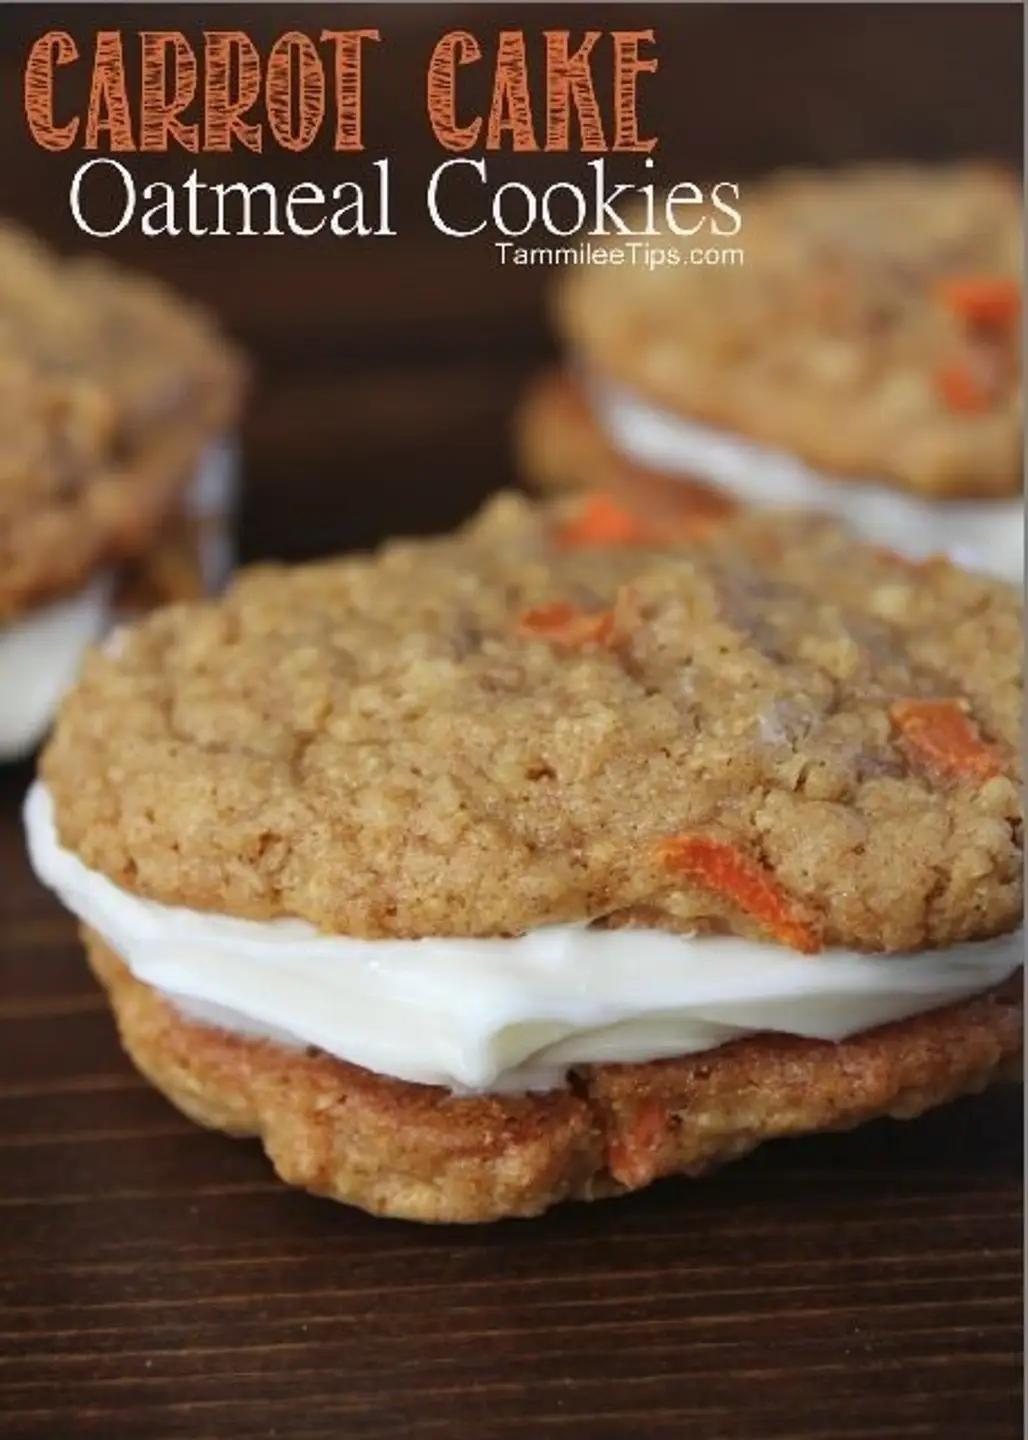 Carrot Cake Oatmeal Cookies Recipe